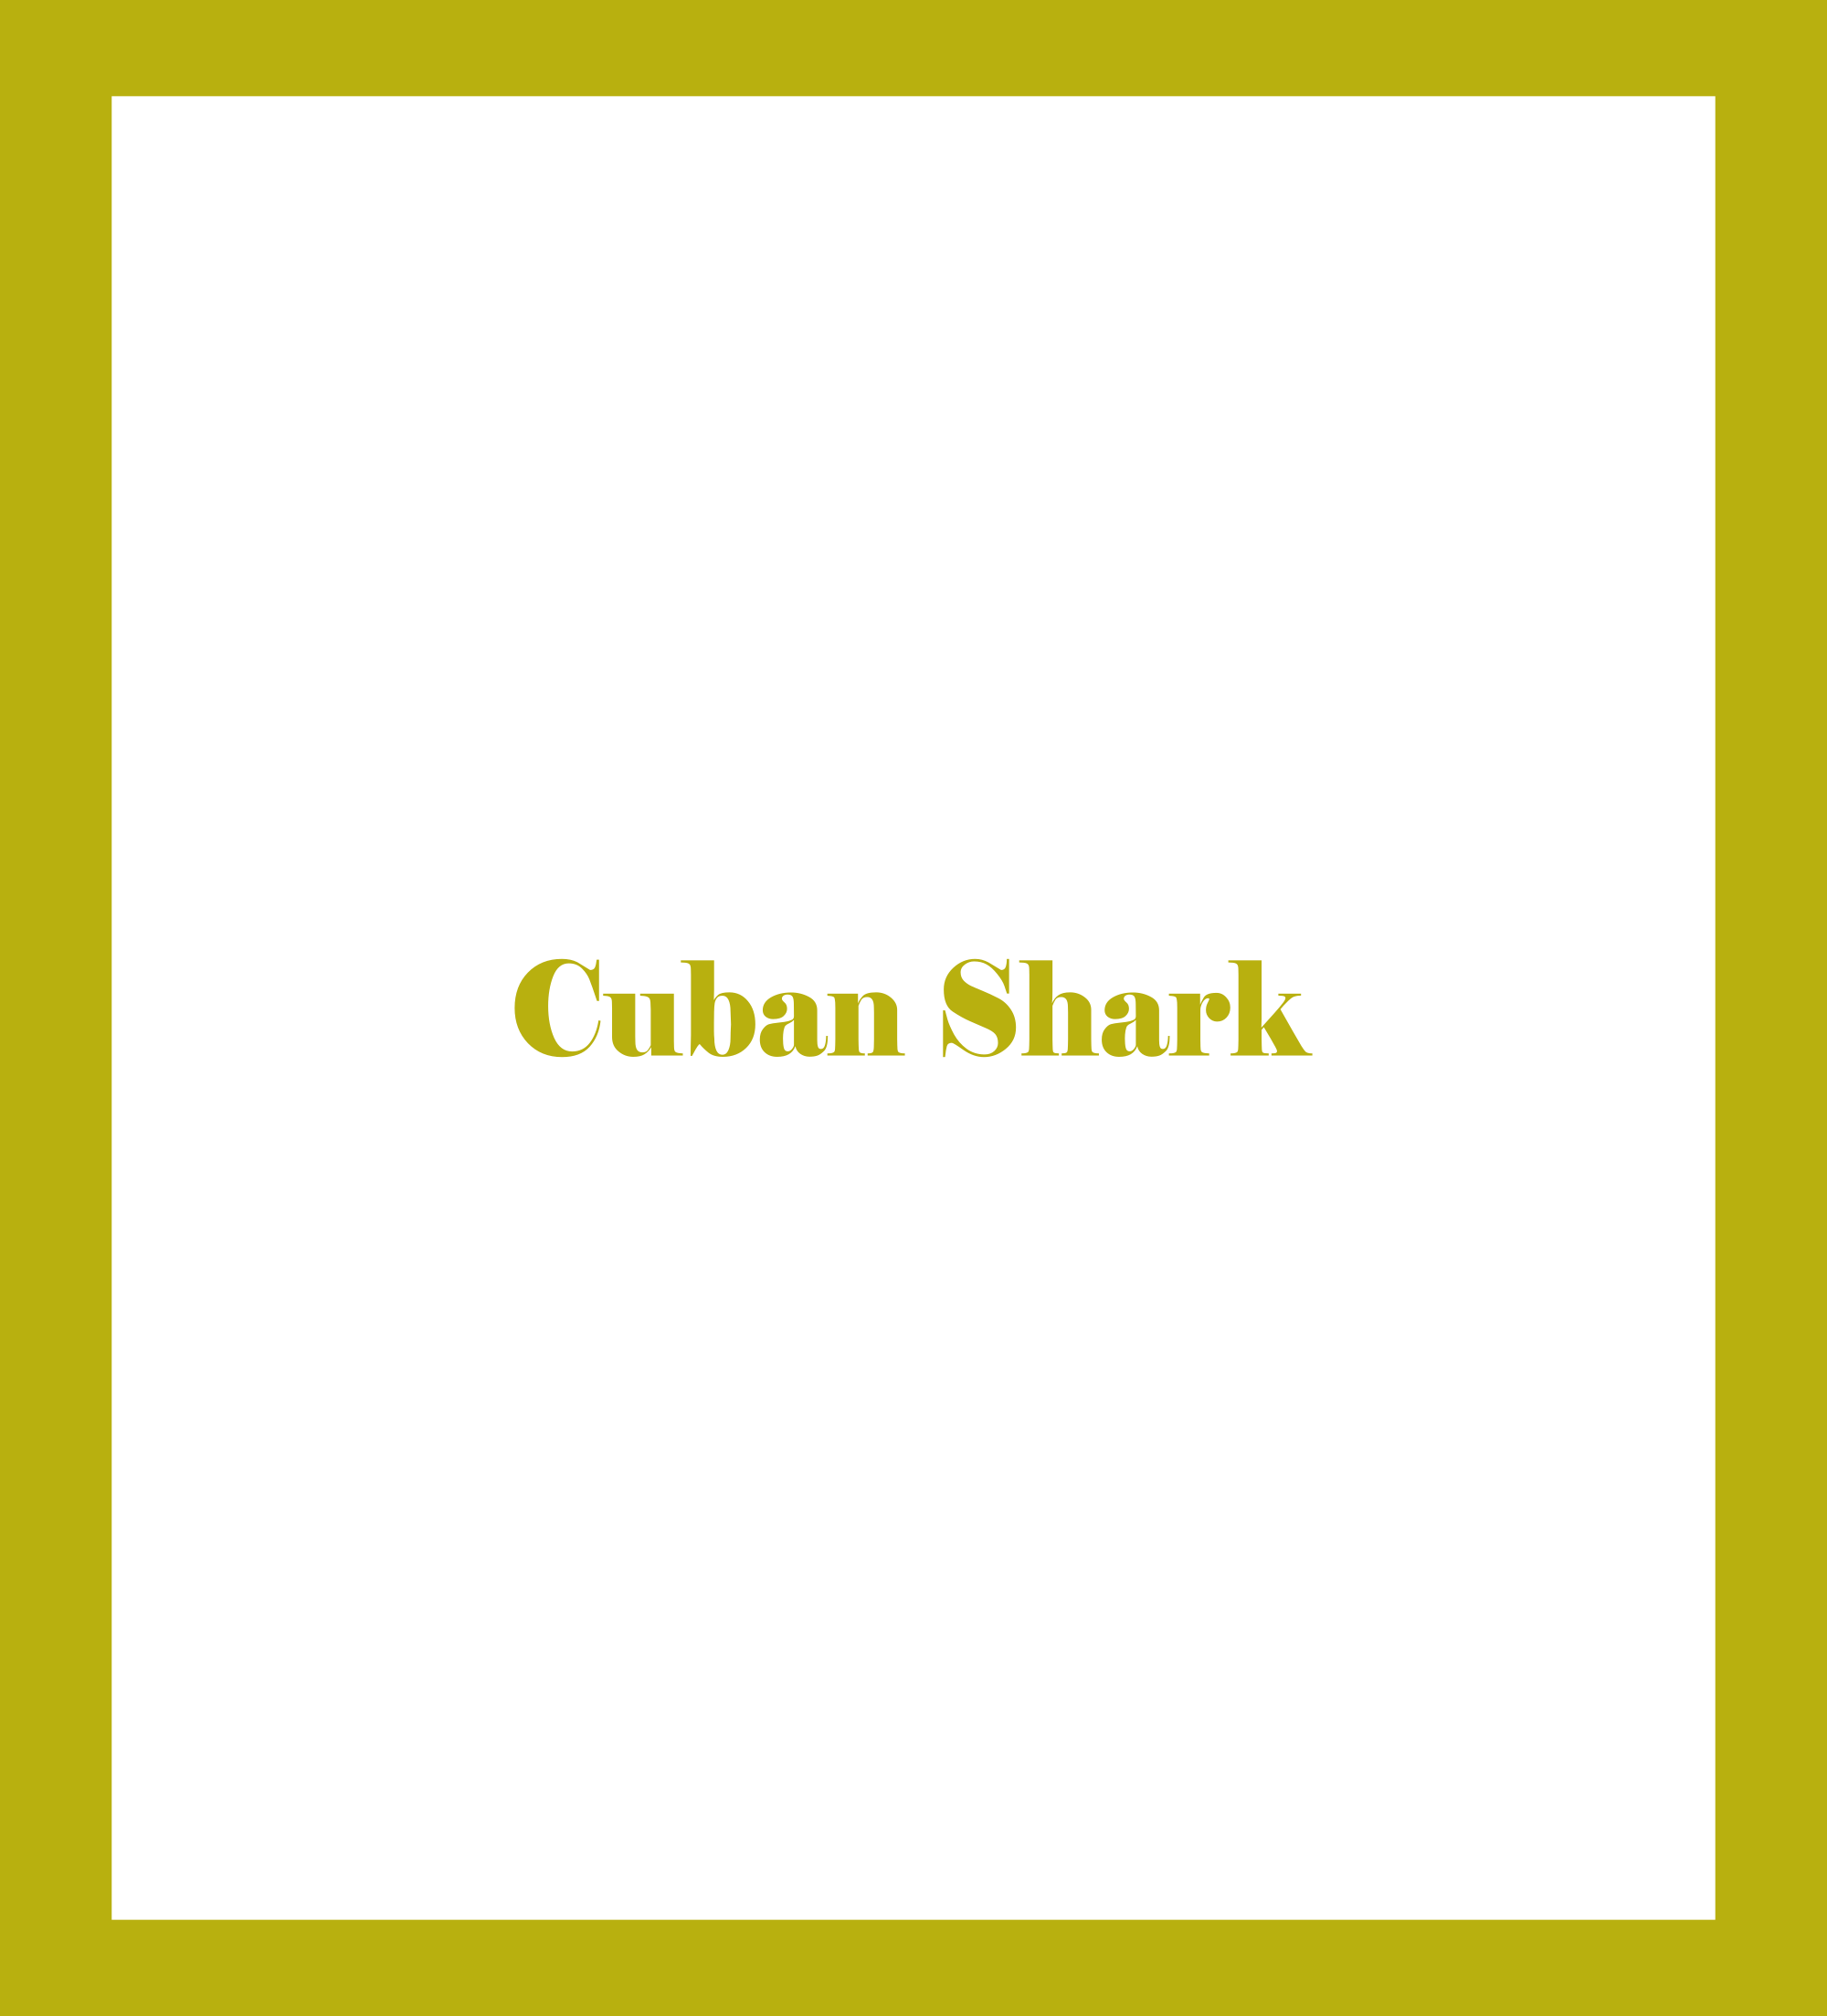 Cuban Shark